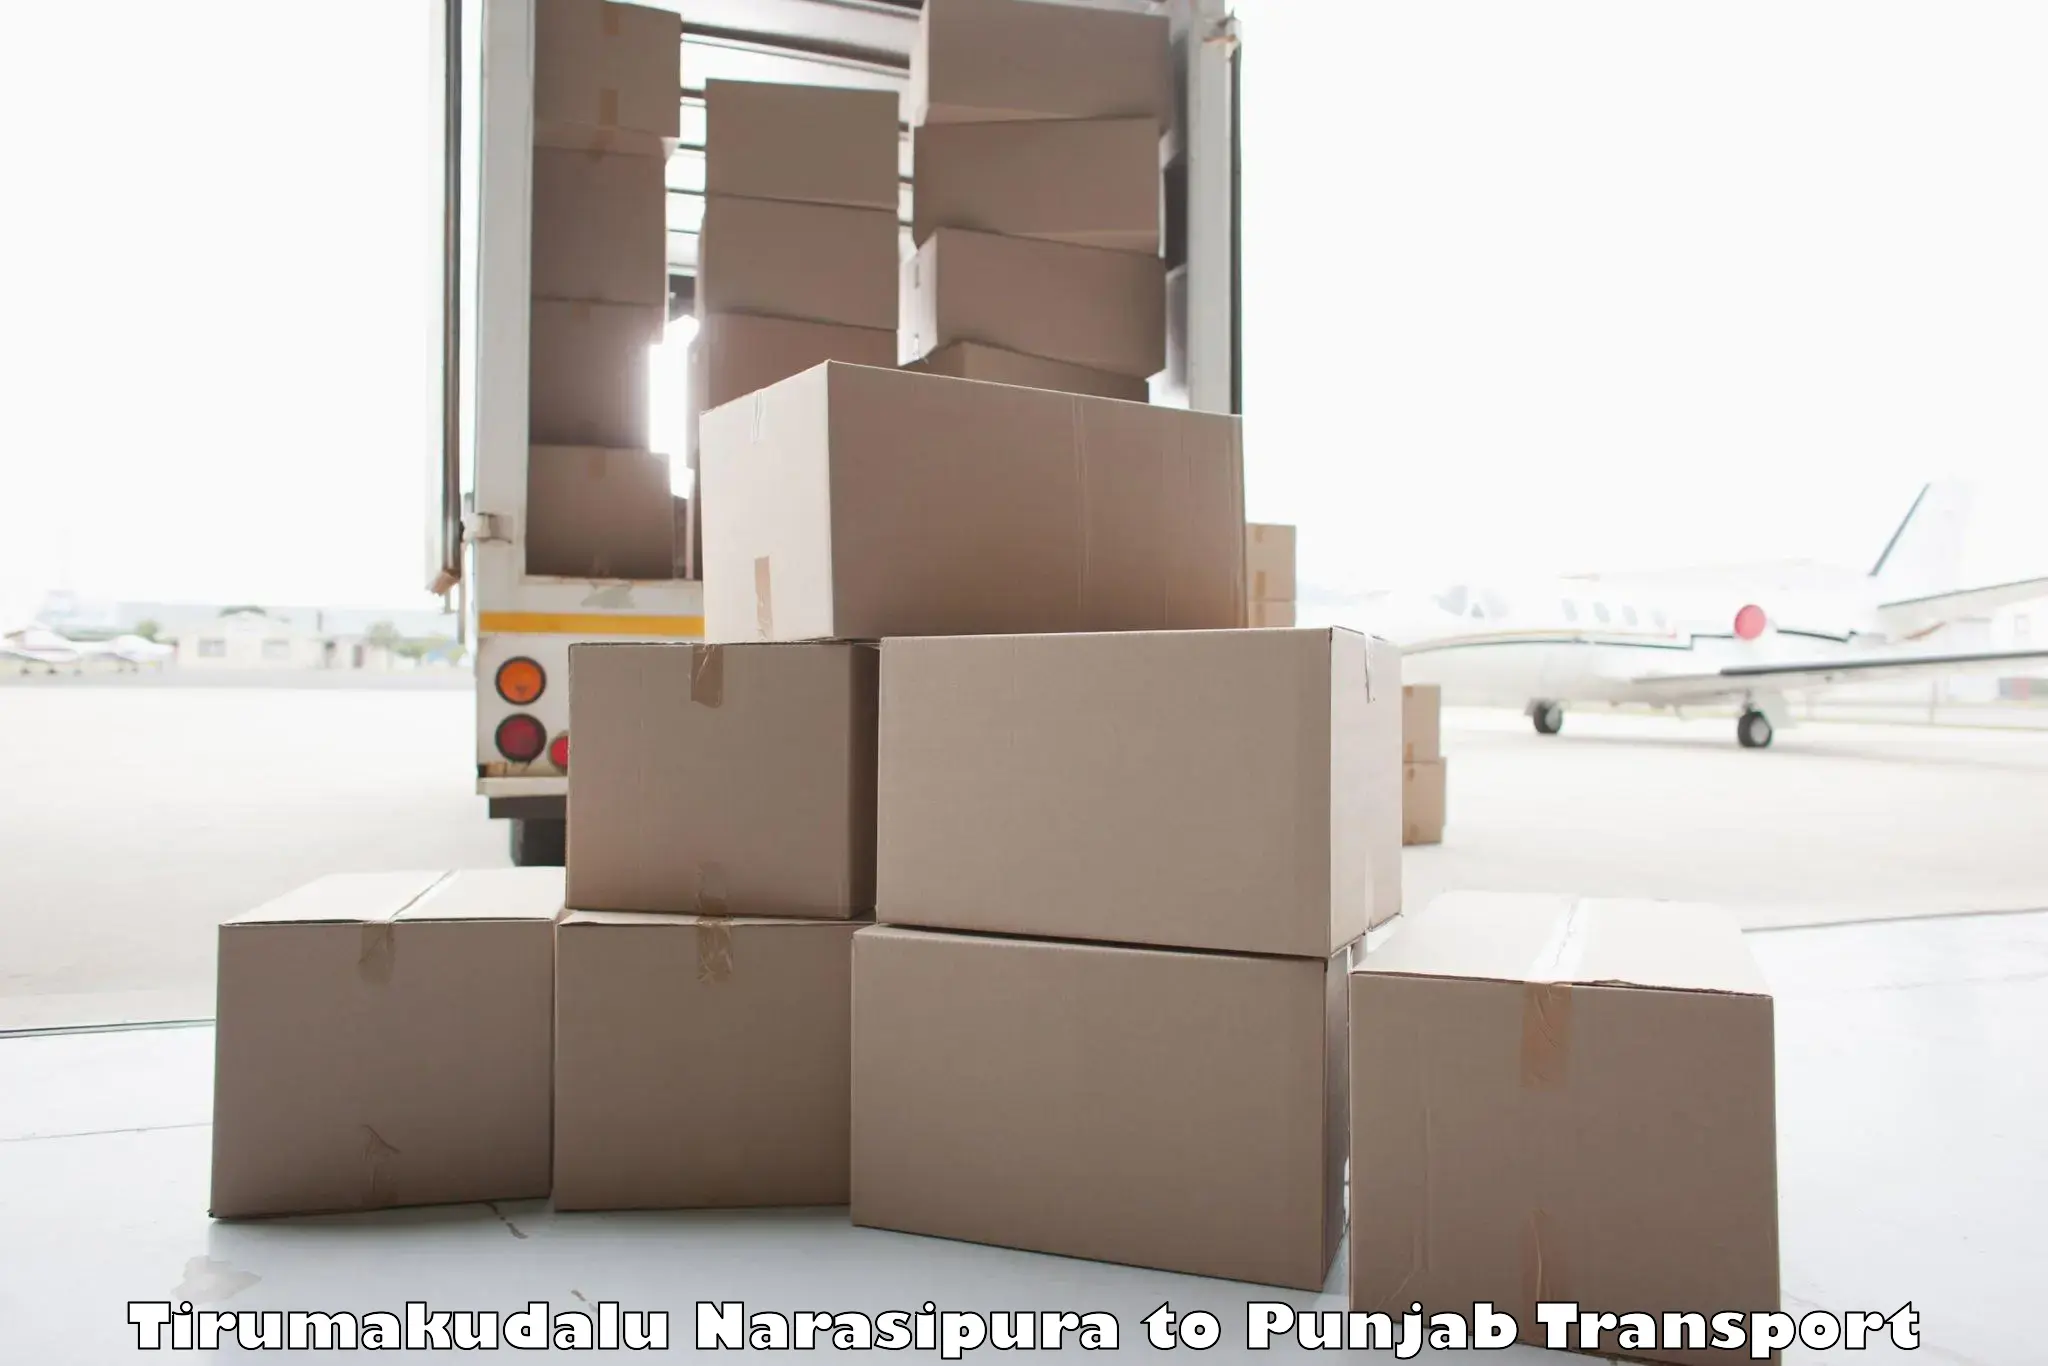 Logistics transportation services Tirumakudalu Narasipura to Punjab